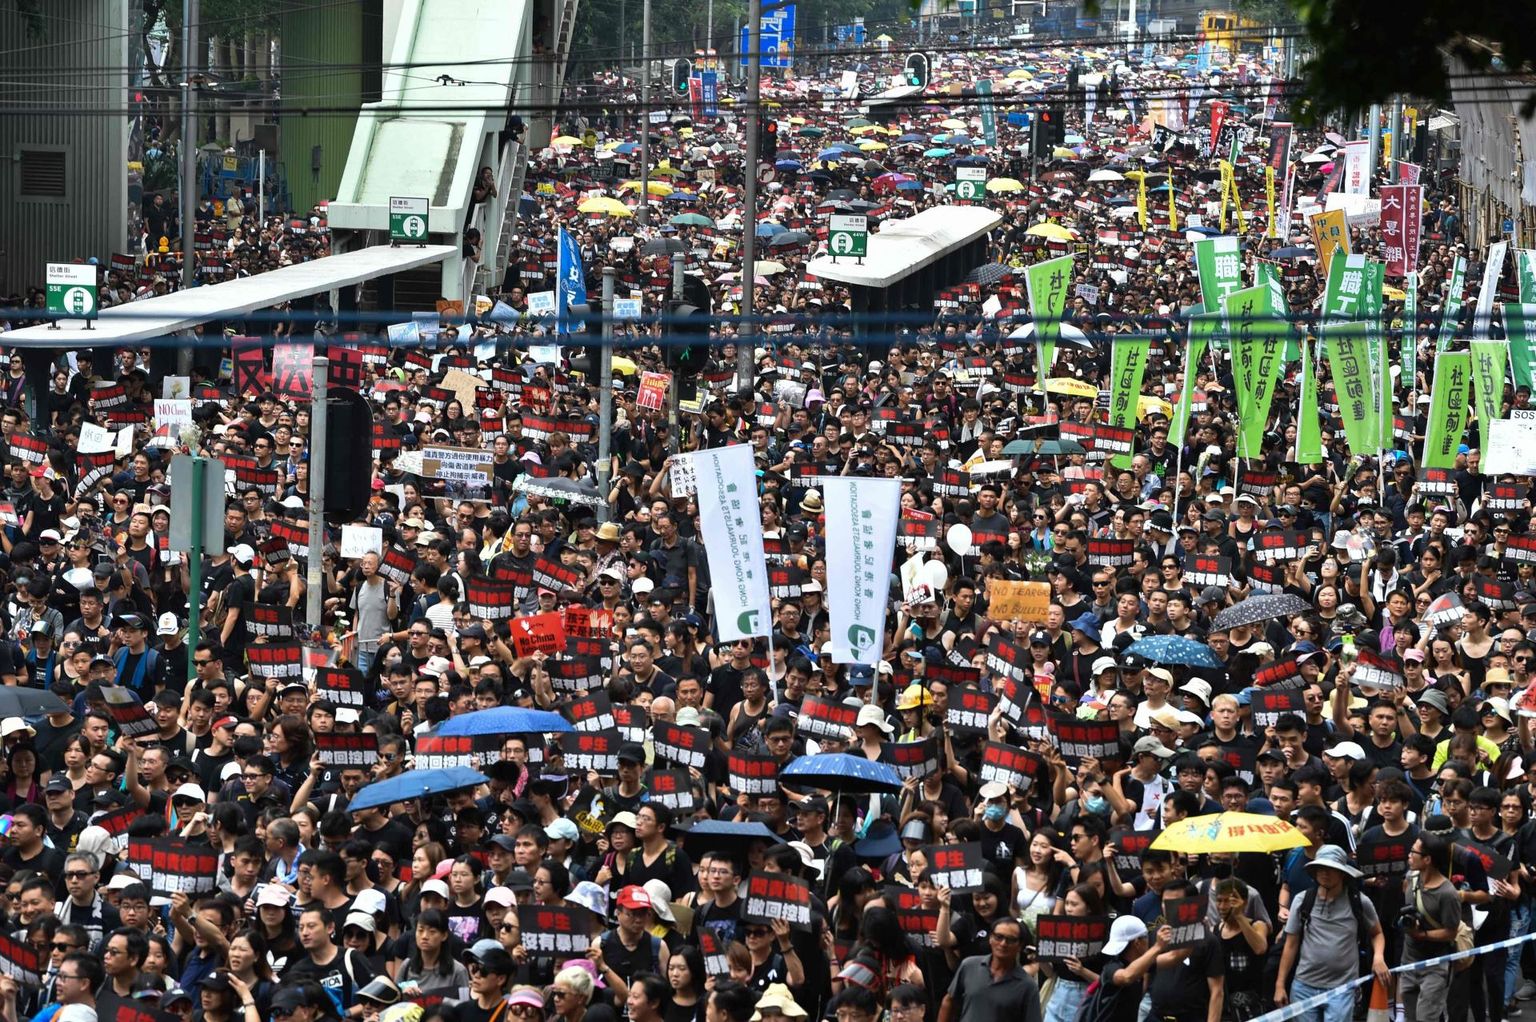 Korraldajate sõnul avaldas Hongkongis eile väljaandmisseaduse vastu meelt kaks miljonit inimest. 